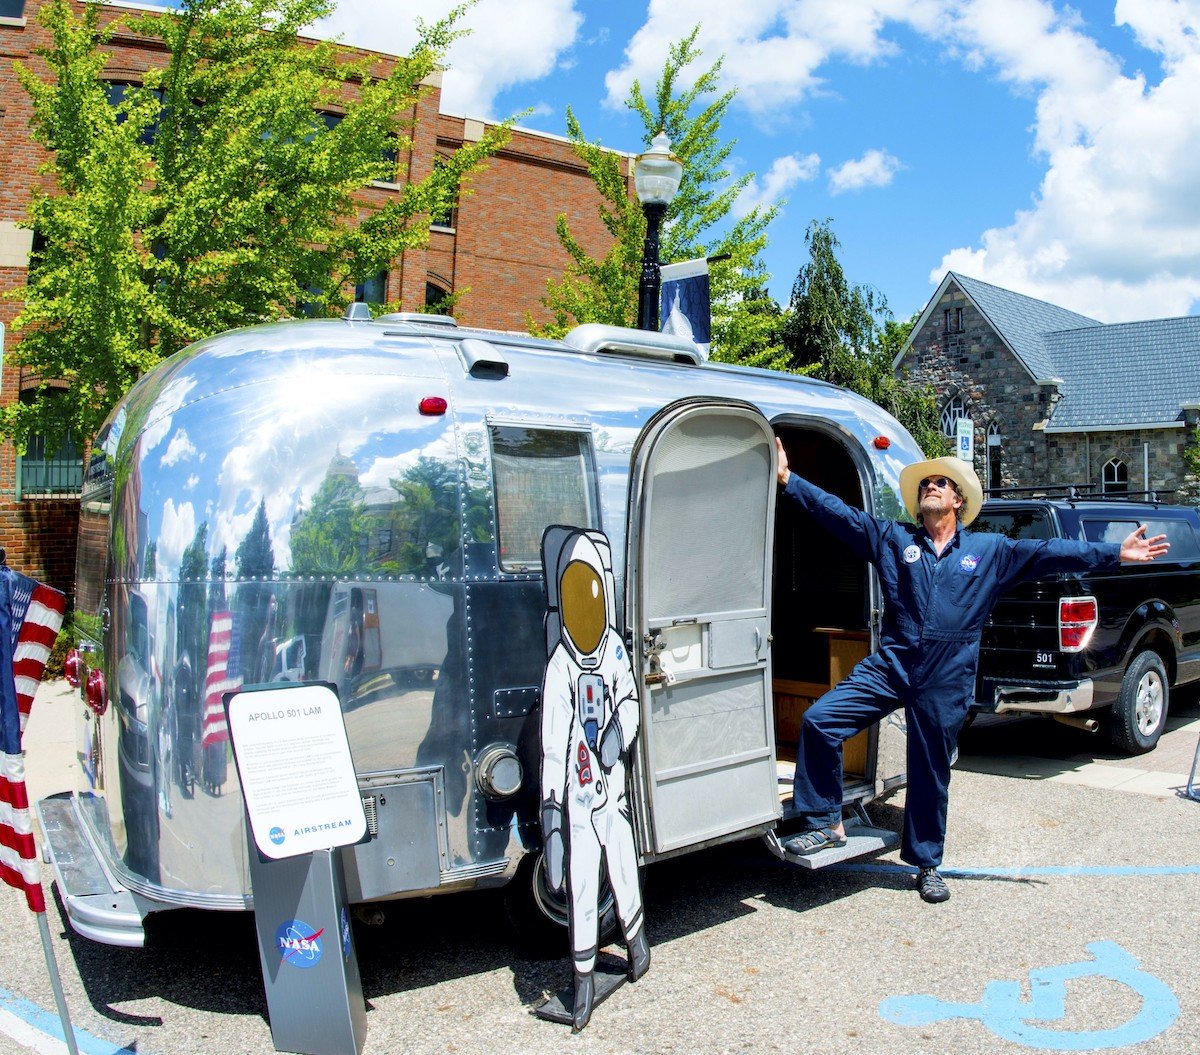 An Airstream trailer at the annual Urban Air Festival in Logan, Ohio.